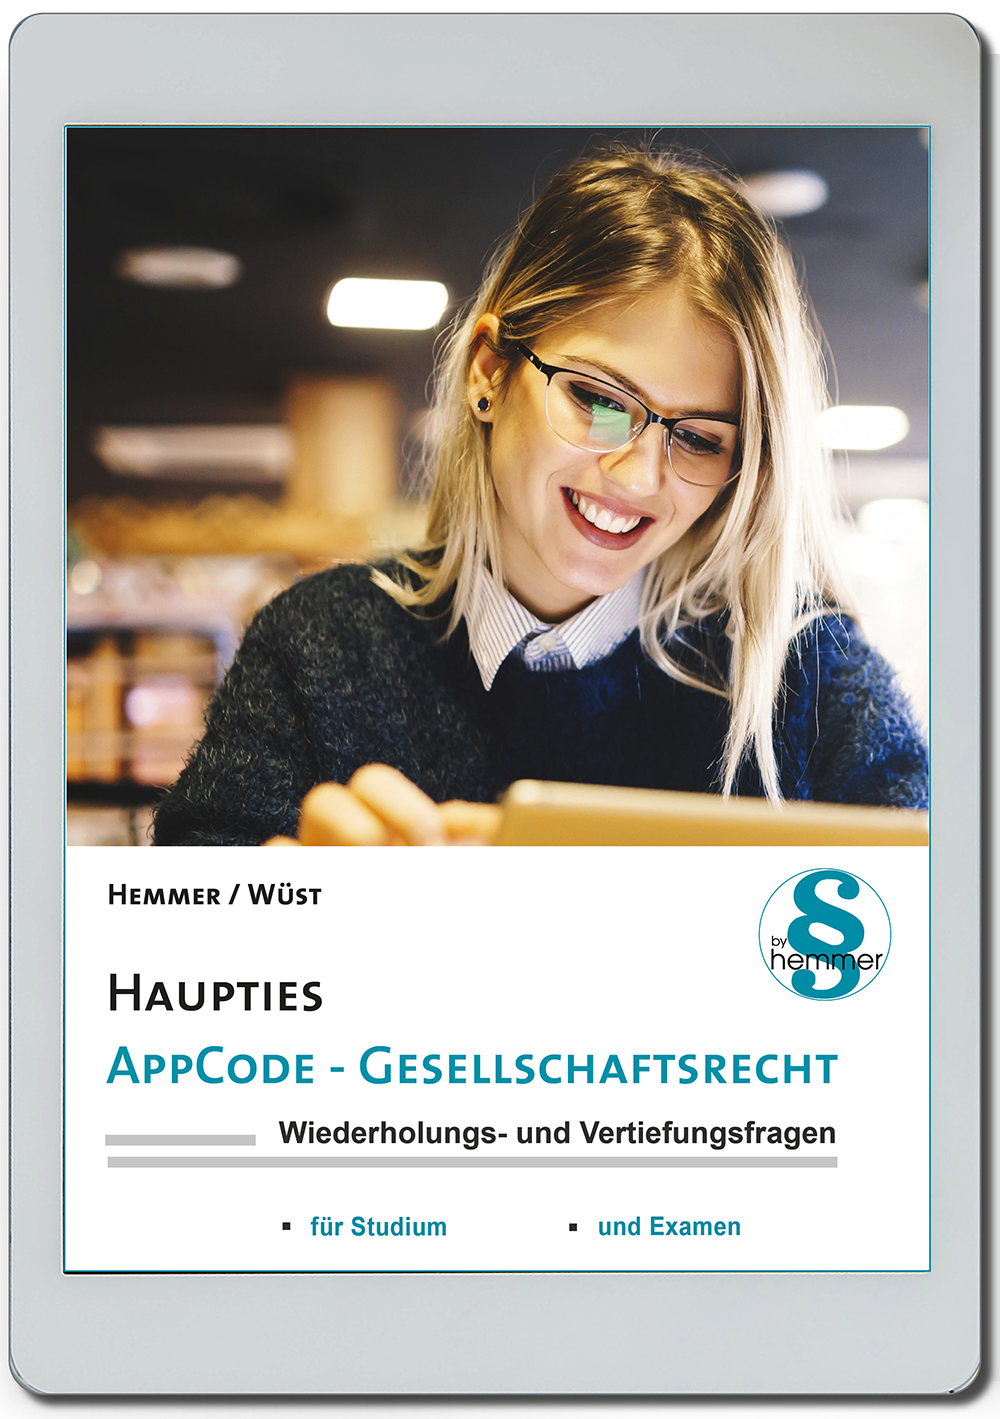 AppCode - haupties - Gesellschaftsrecht